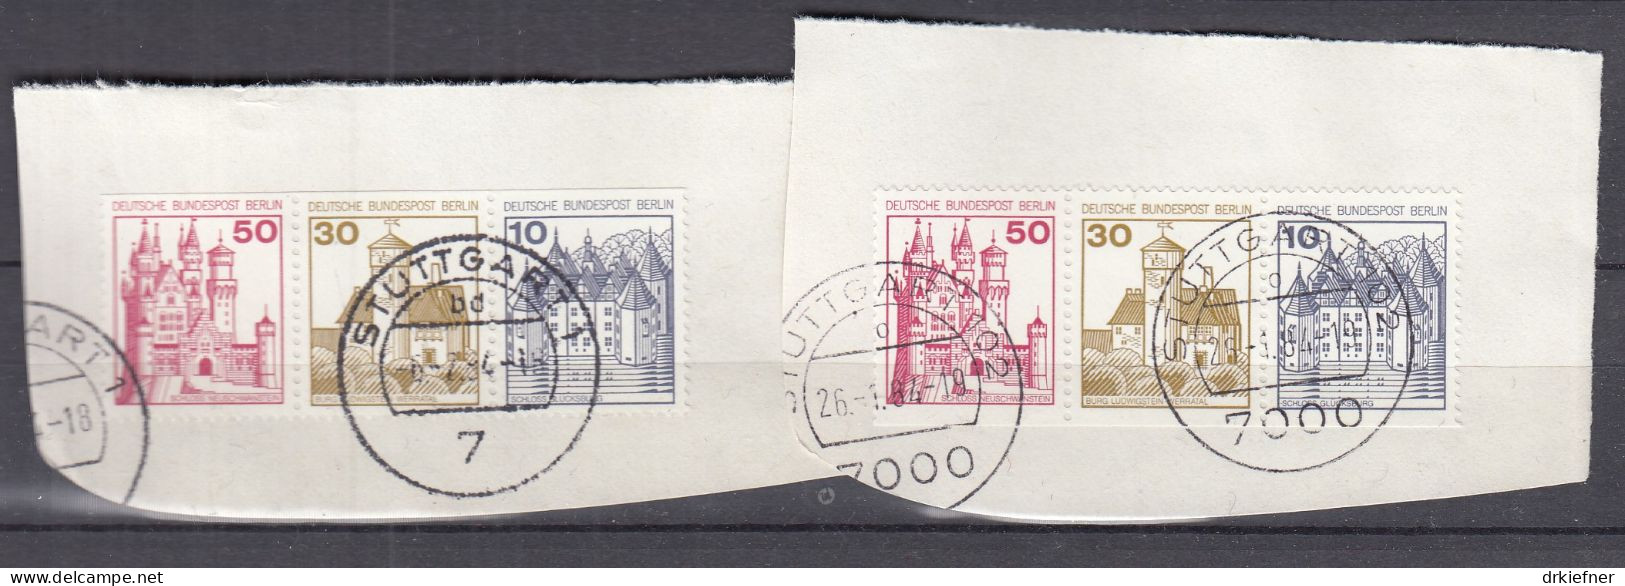 BERLIN  W 63 + W 64, Gestempelt Auf Briefstück, Burgen Und Schlösser, 1977 - Carnets